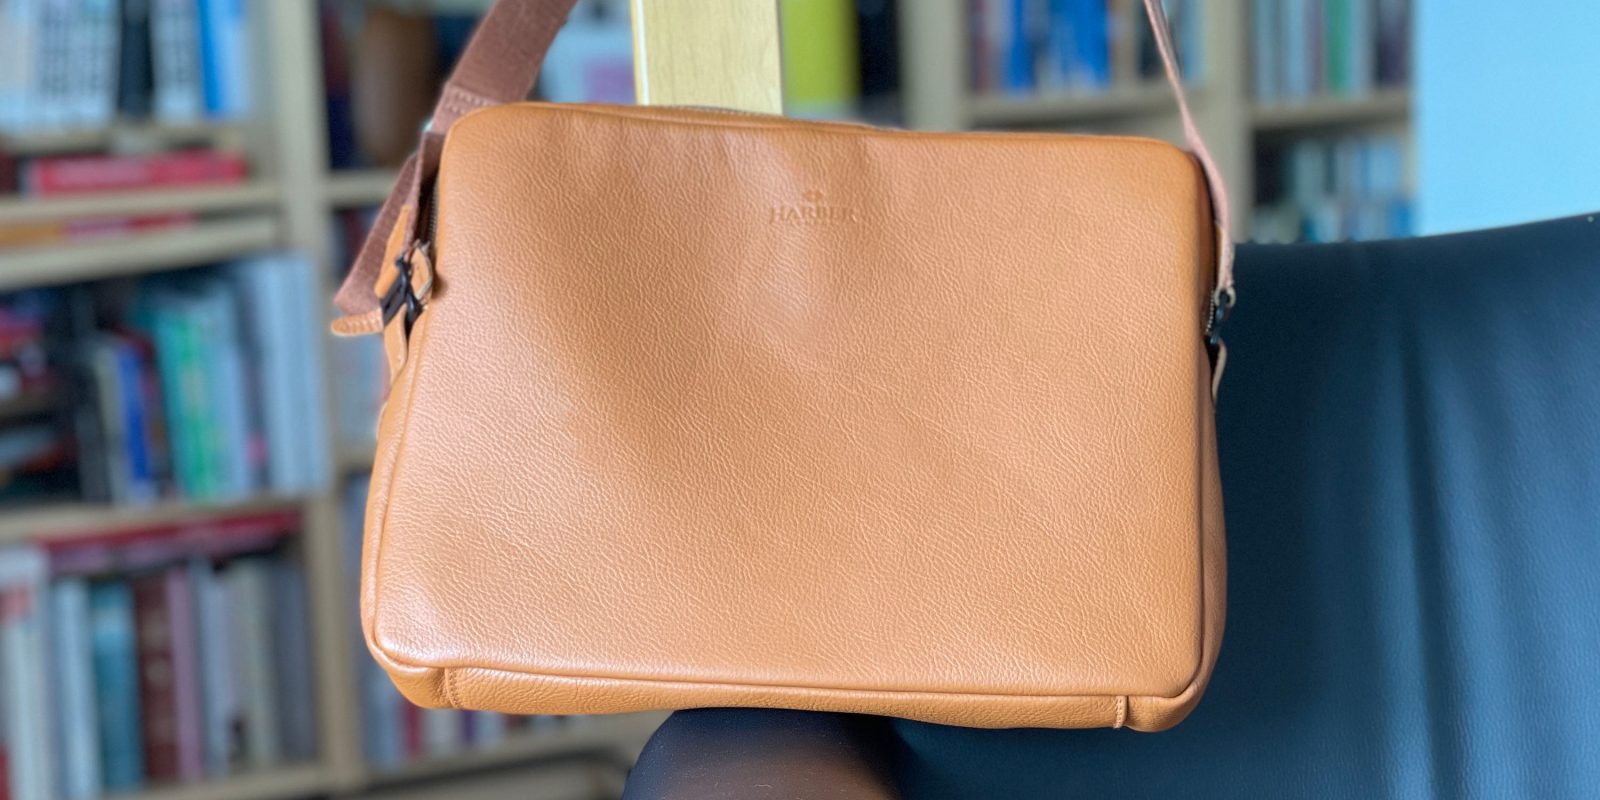 12.9 inç iPad için Harber London deri postacı çantası